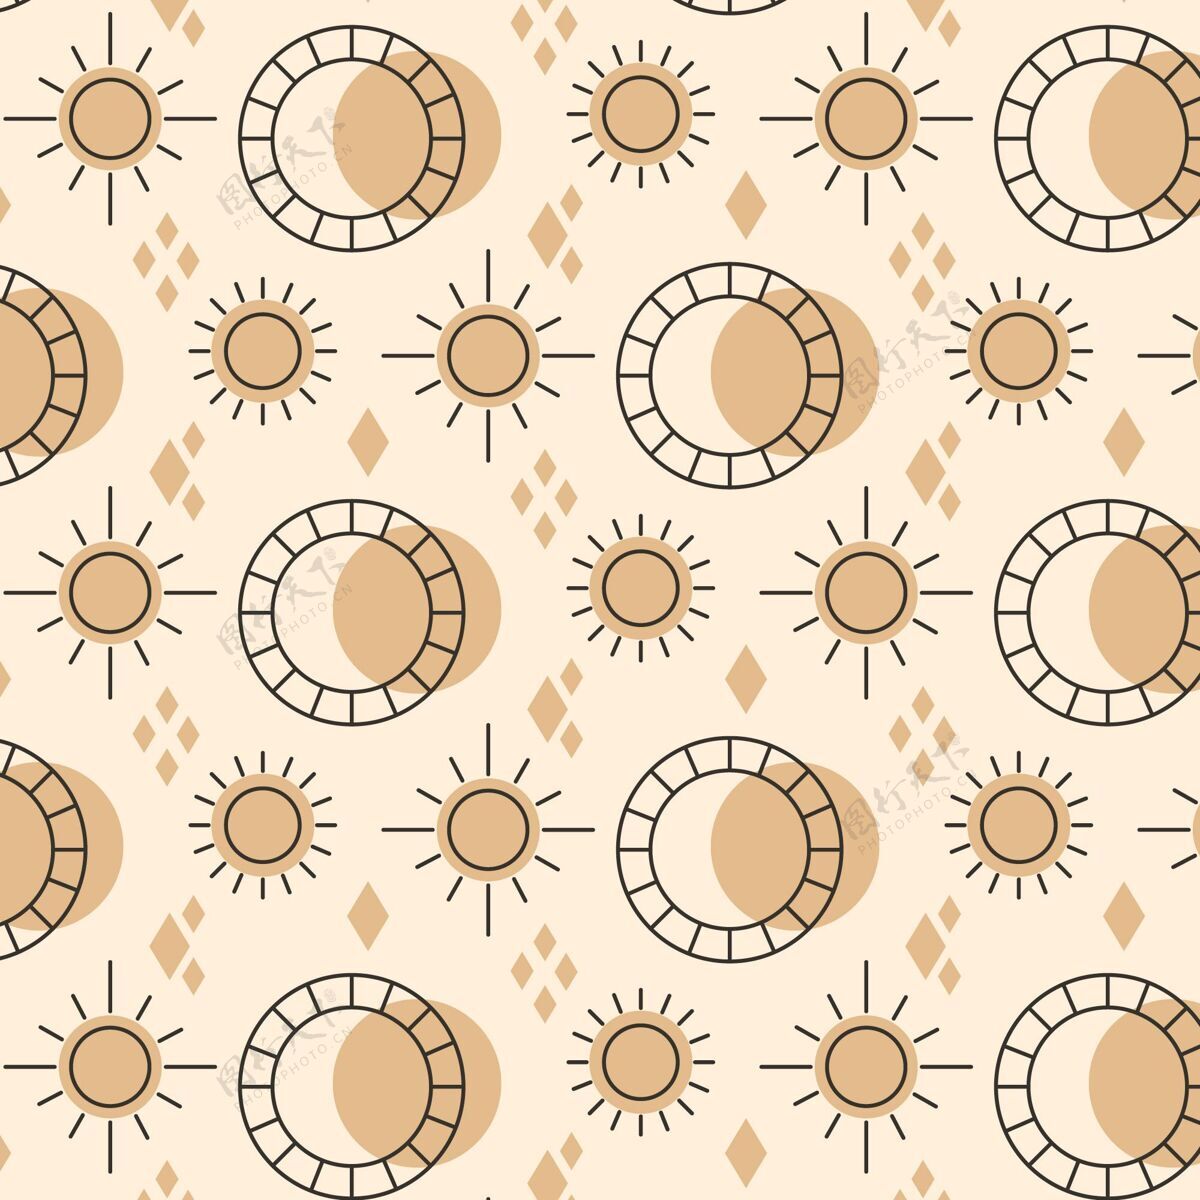 壁纸平面设计太阳图案图案太阳壁纸平面设计